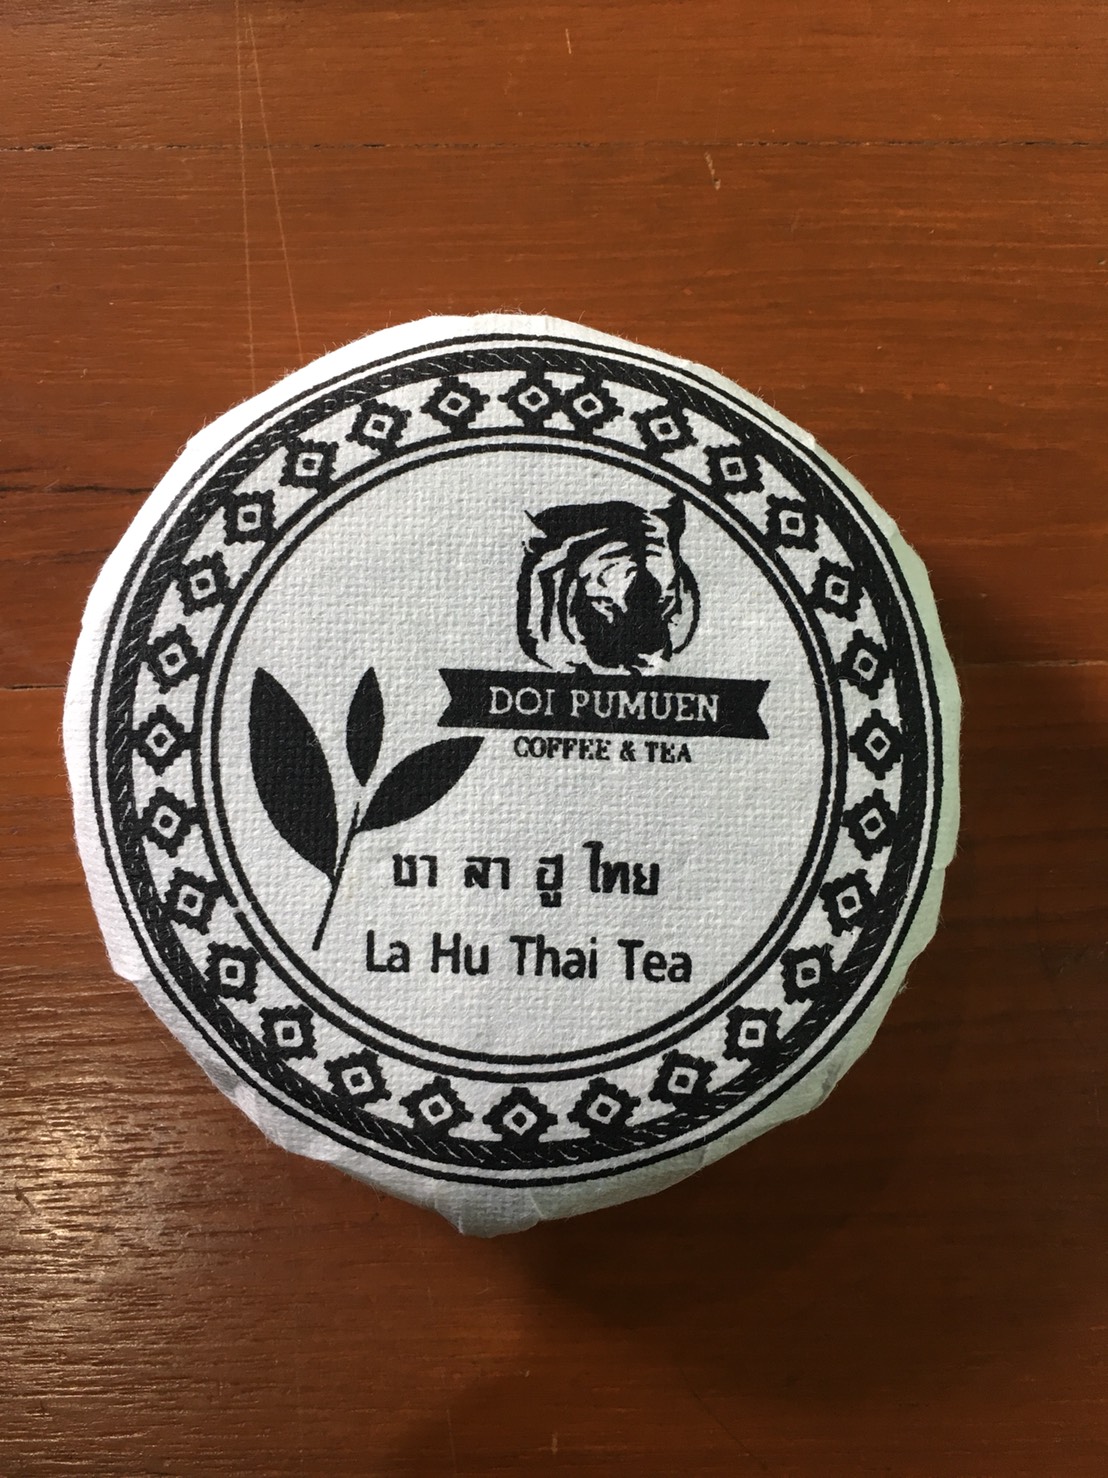 ชาผู่เออร์ ออร์แกนิค กล่องผ้าไหม (ตราดอยปู่หมื่น) 100 กรัม Organic Puer Tea (Doi Pumuen Brand) 100g ชาผู่เอ๋อ